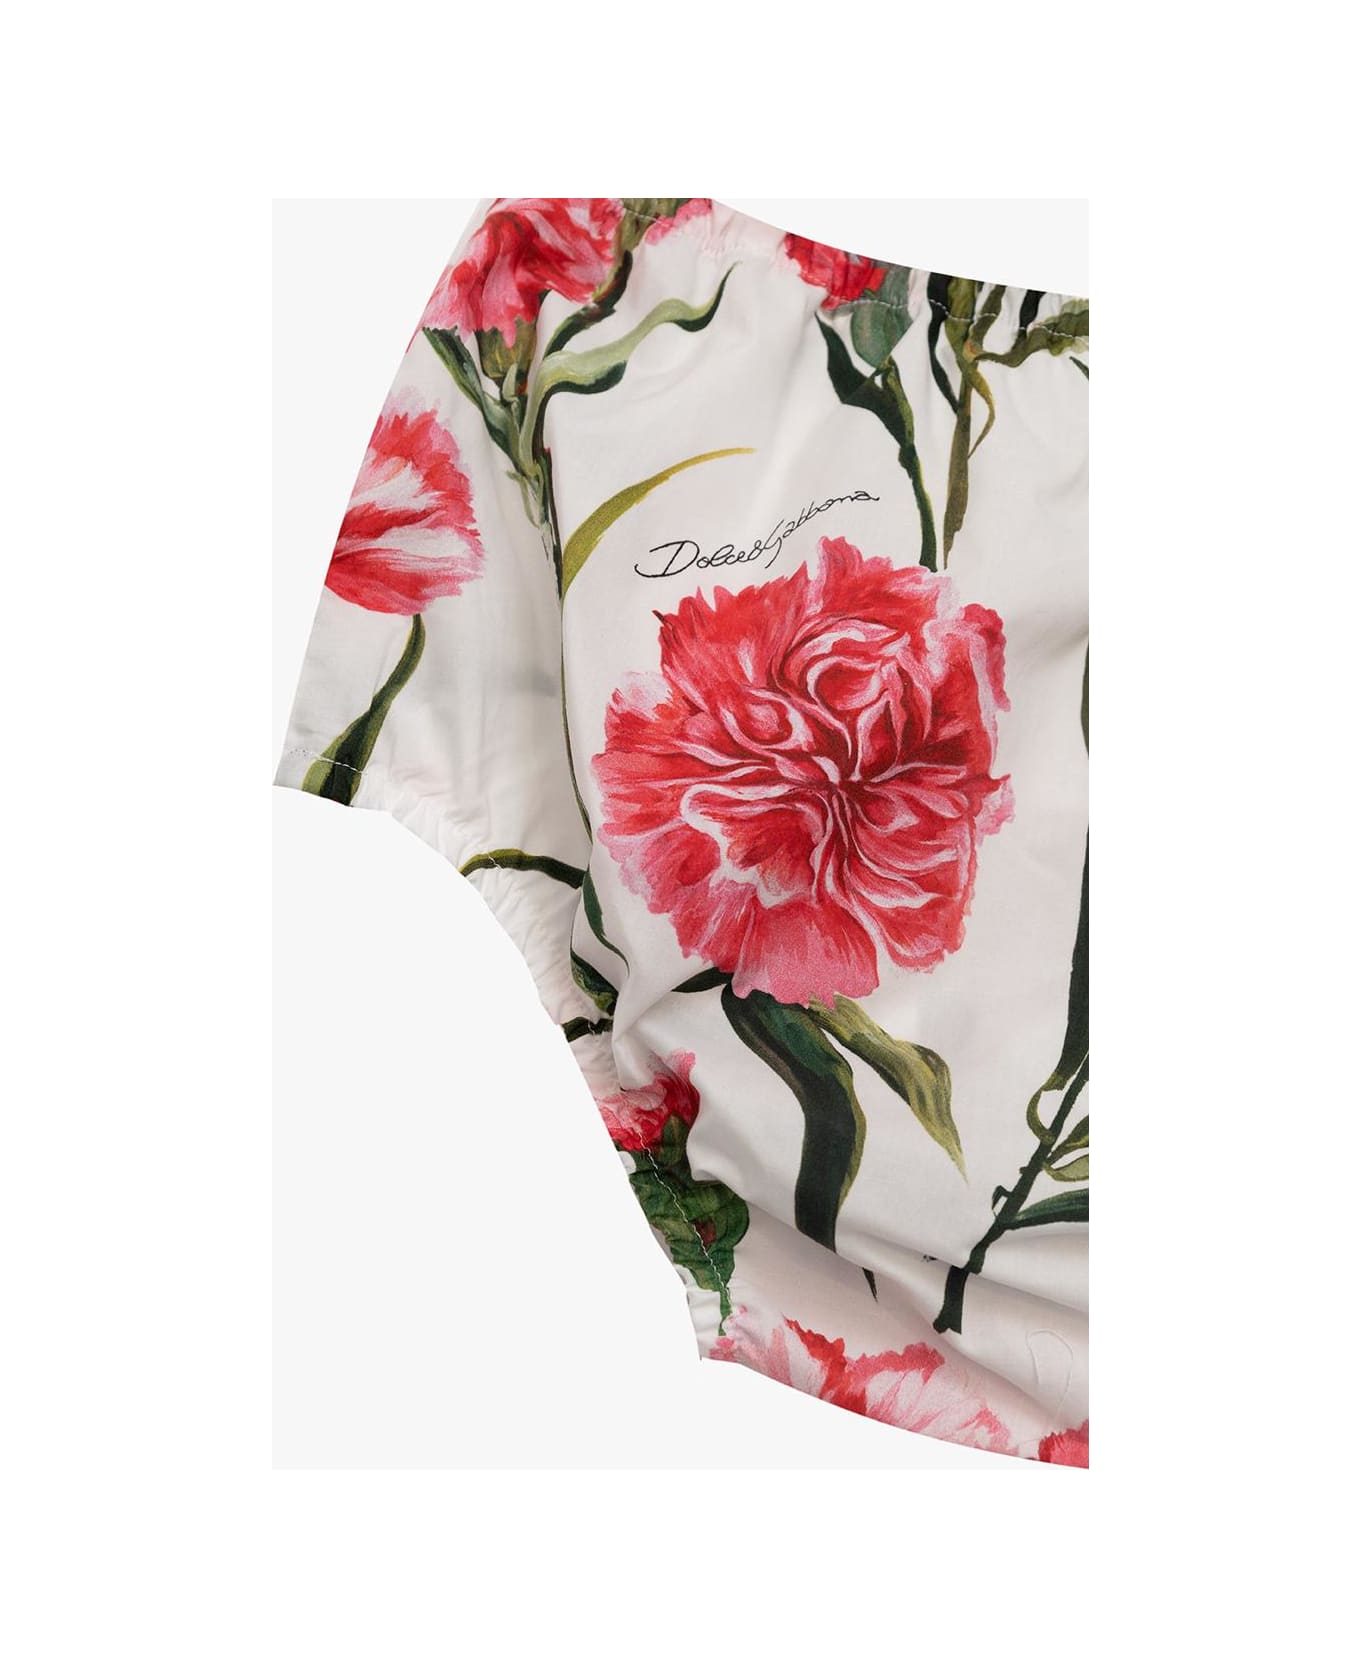 Dolce & Gabbana Kids Floral Dress - NEUTRALS/RED